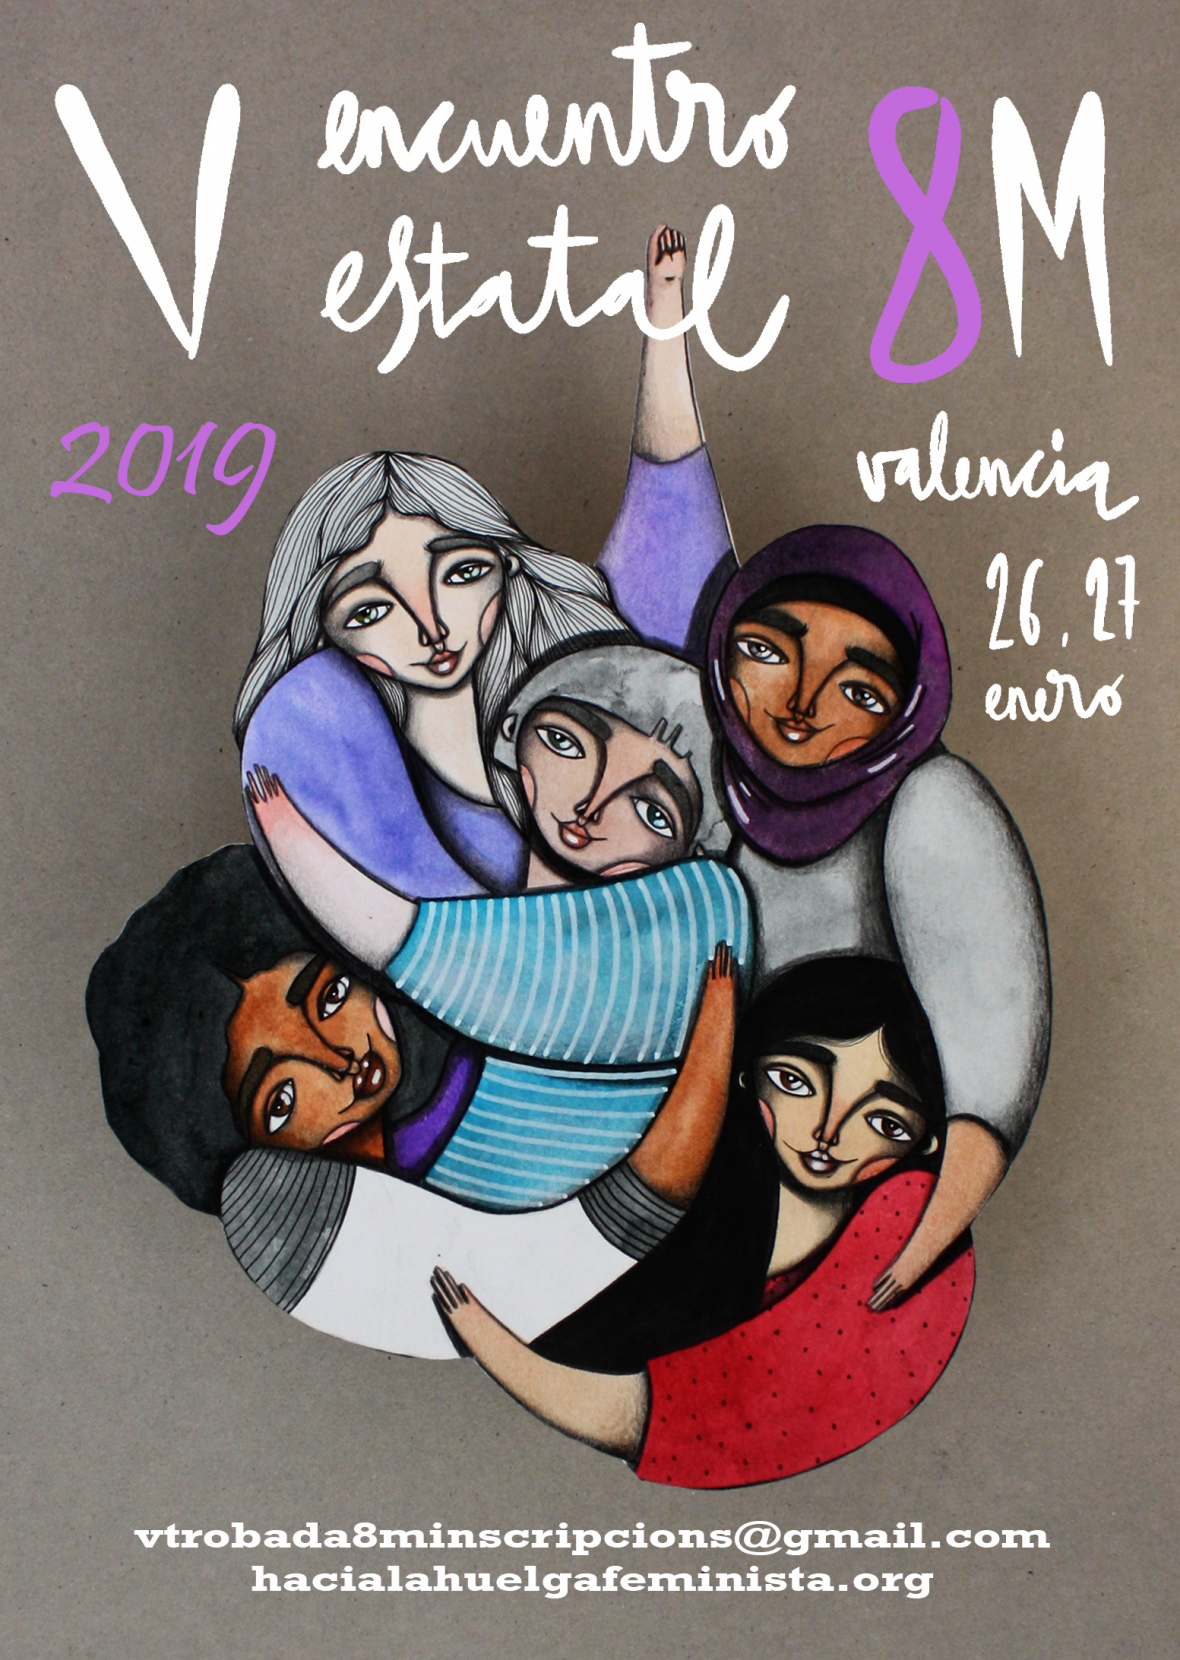 Cartel del quinto Encuentro estatal 8M Valencia 26 y 27 de enero de 2019 vtrovada8minscripcions@gmail.com hacialahuelgafeminista.org